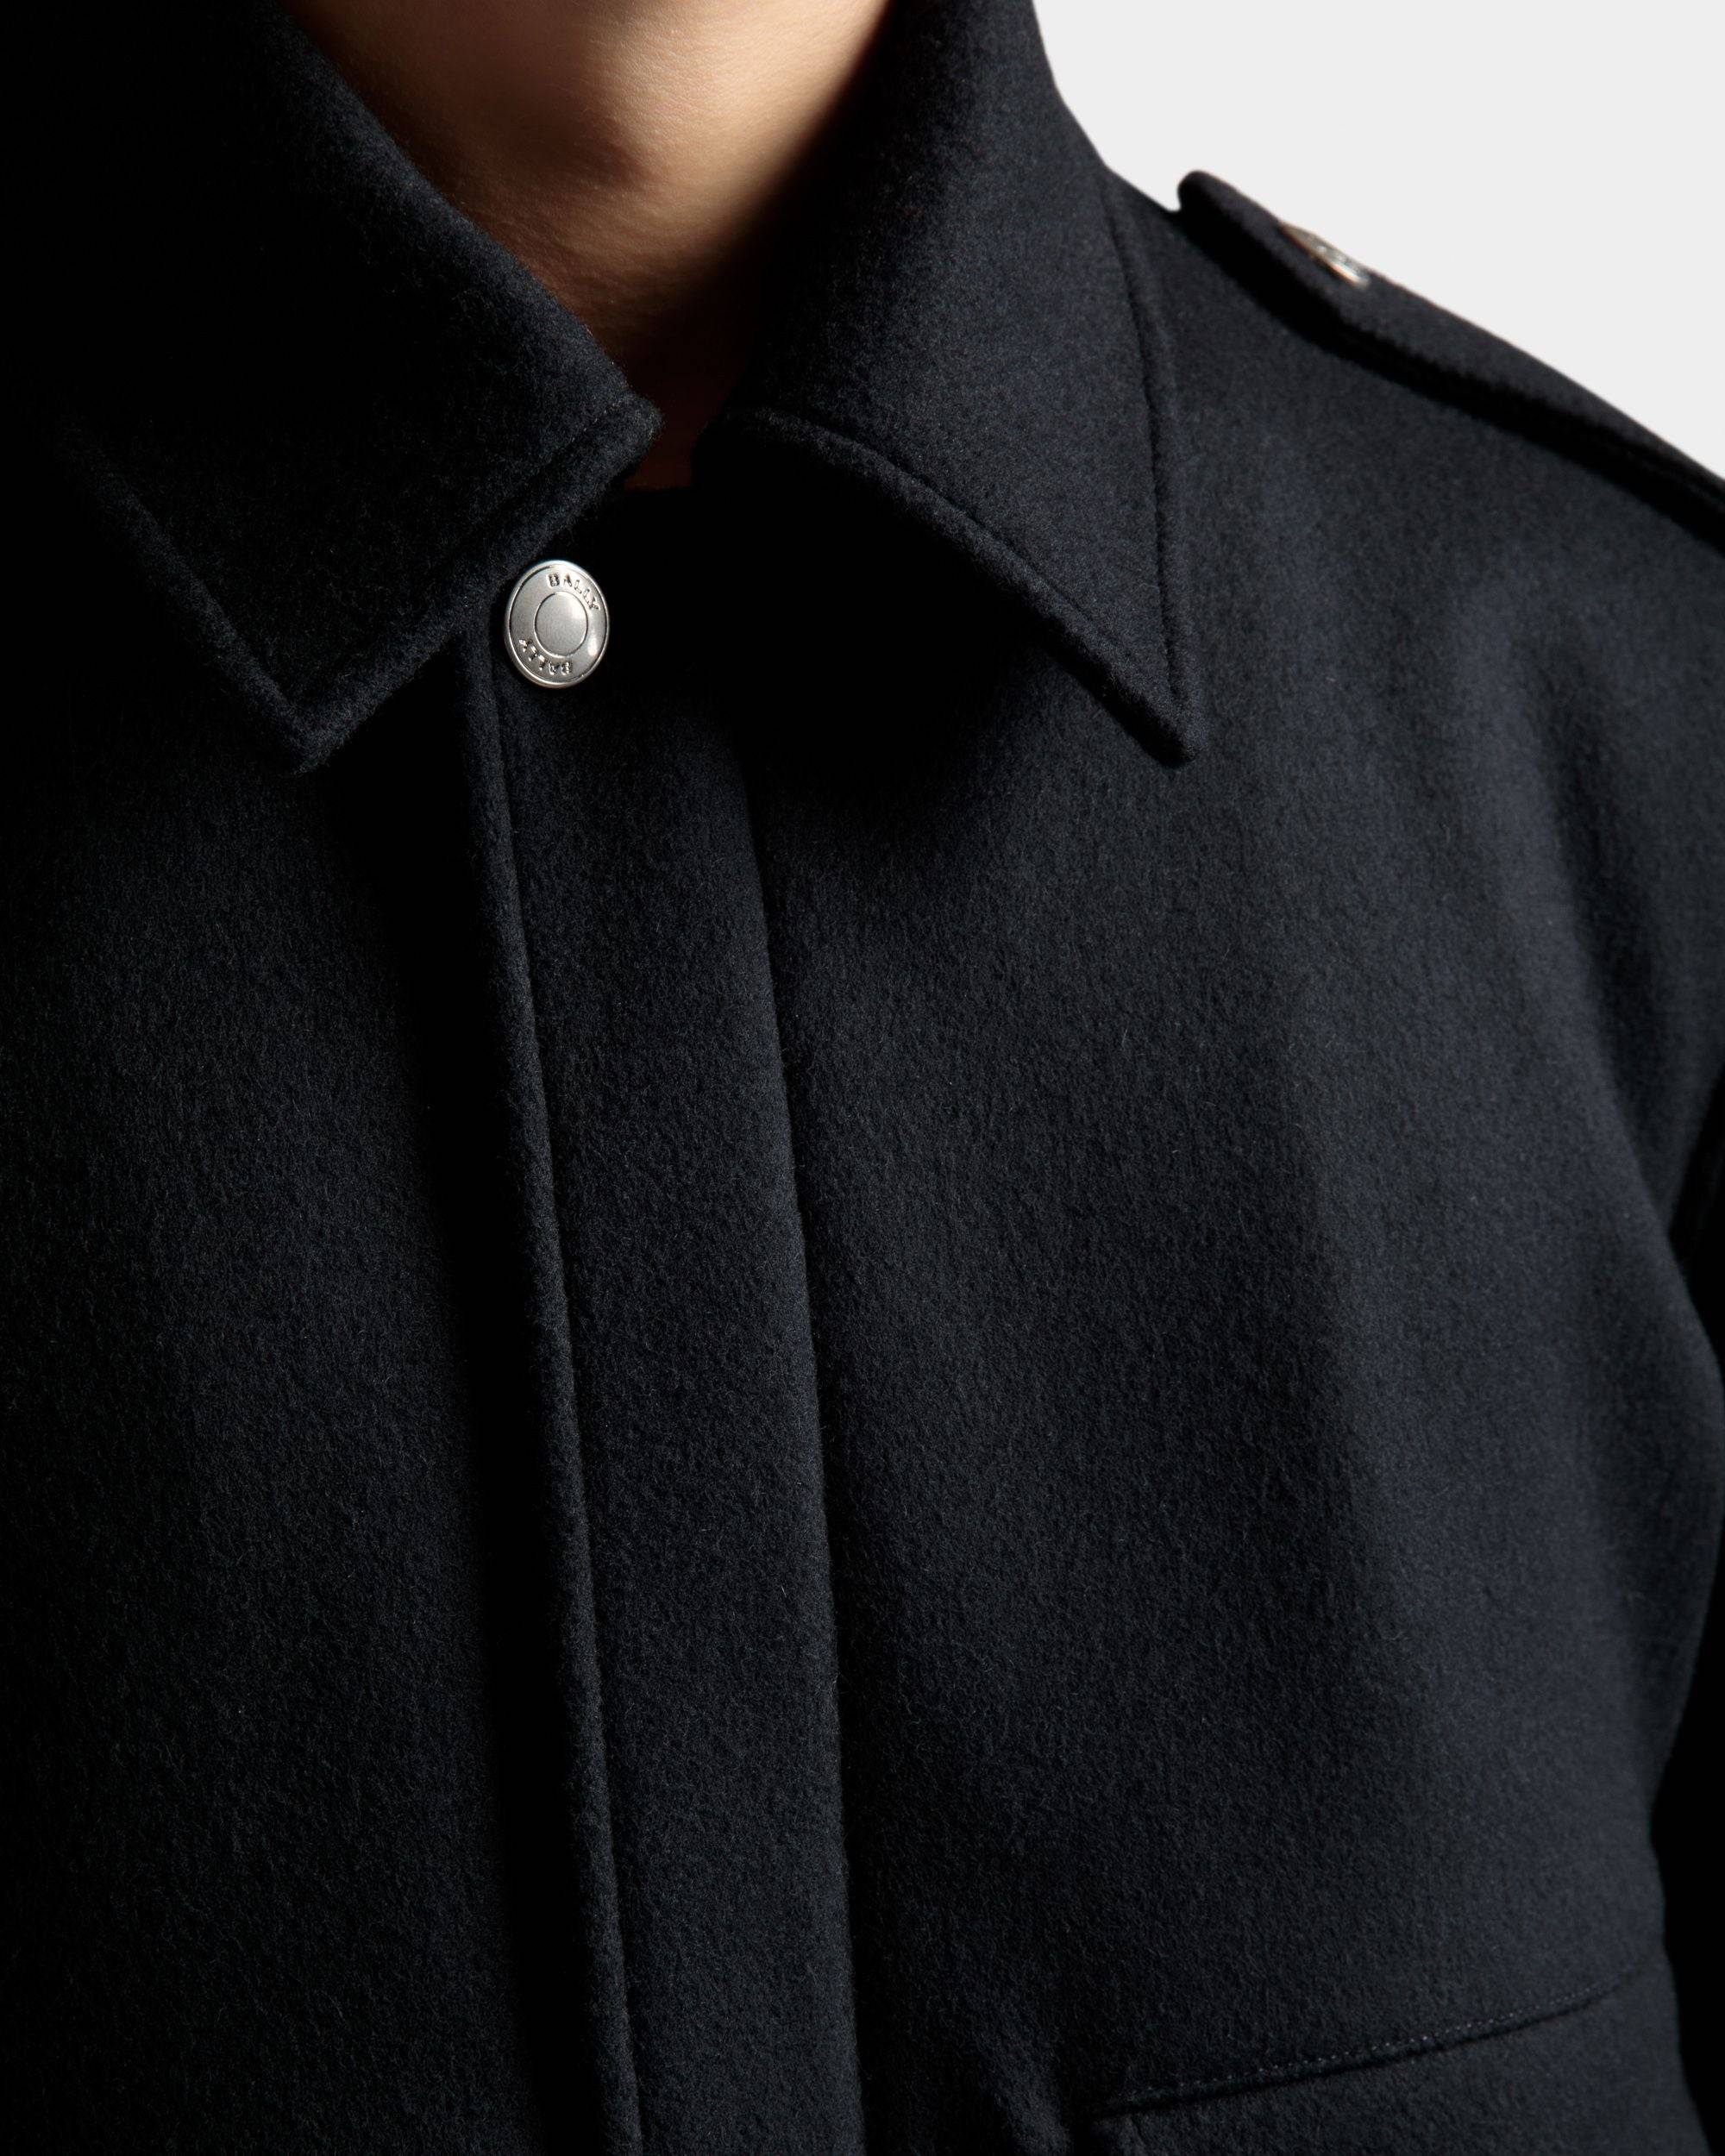 Bomberjacke | Jacken und Mäntel für Herren | Marineblaues Wollgemisch | Bally | Model getragen Detail